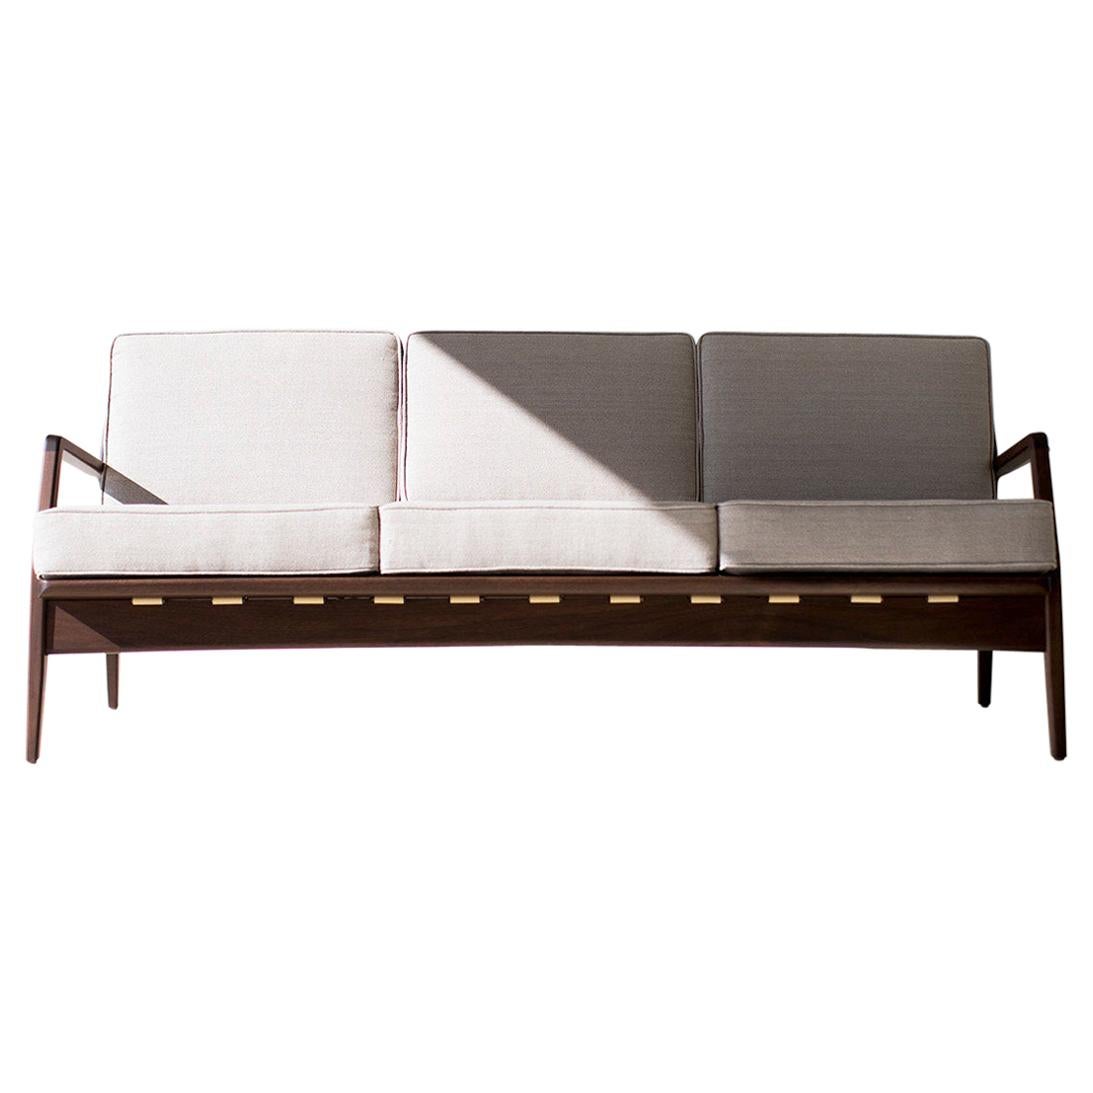 Lawrence Peabody Dänisches Sofa für Craft Associates Furniture